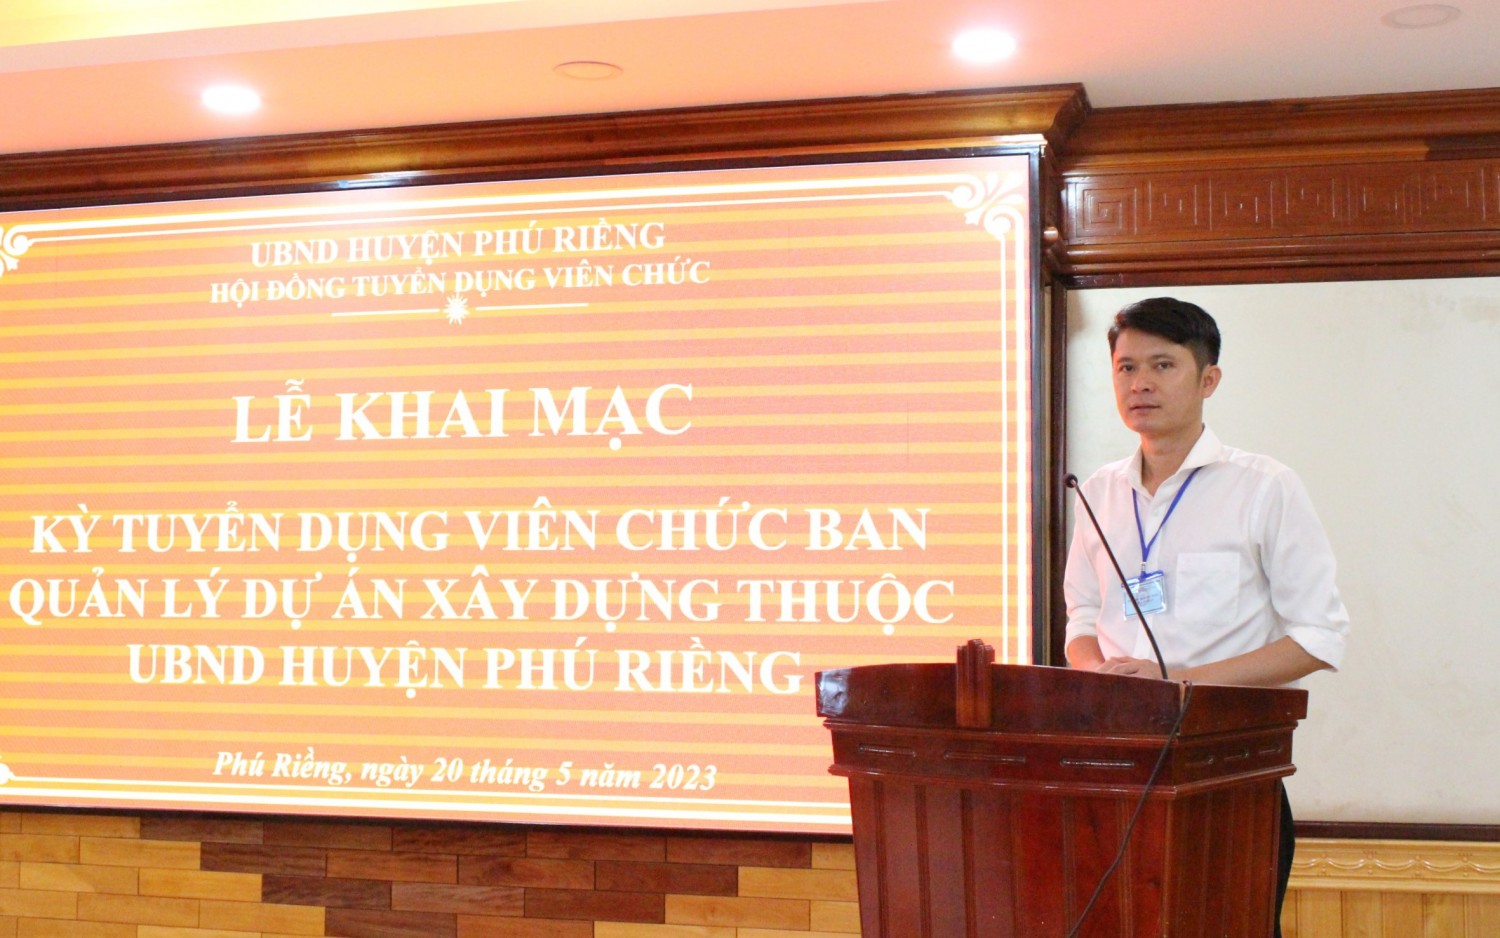 13 thí sinh tham gia Kỳ tuyển dụng viên chức Ban Quản lý dự án xây dựng thuộc UBND huyện Phú Riềng.